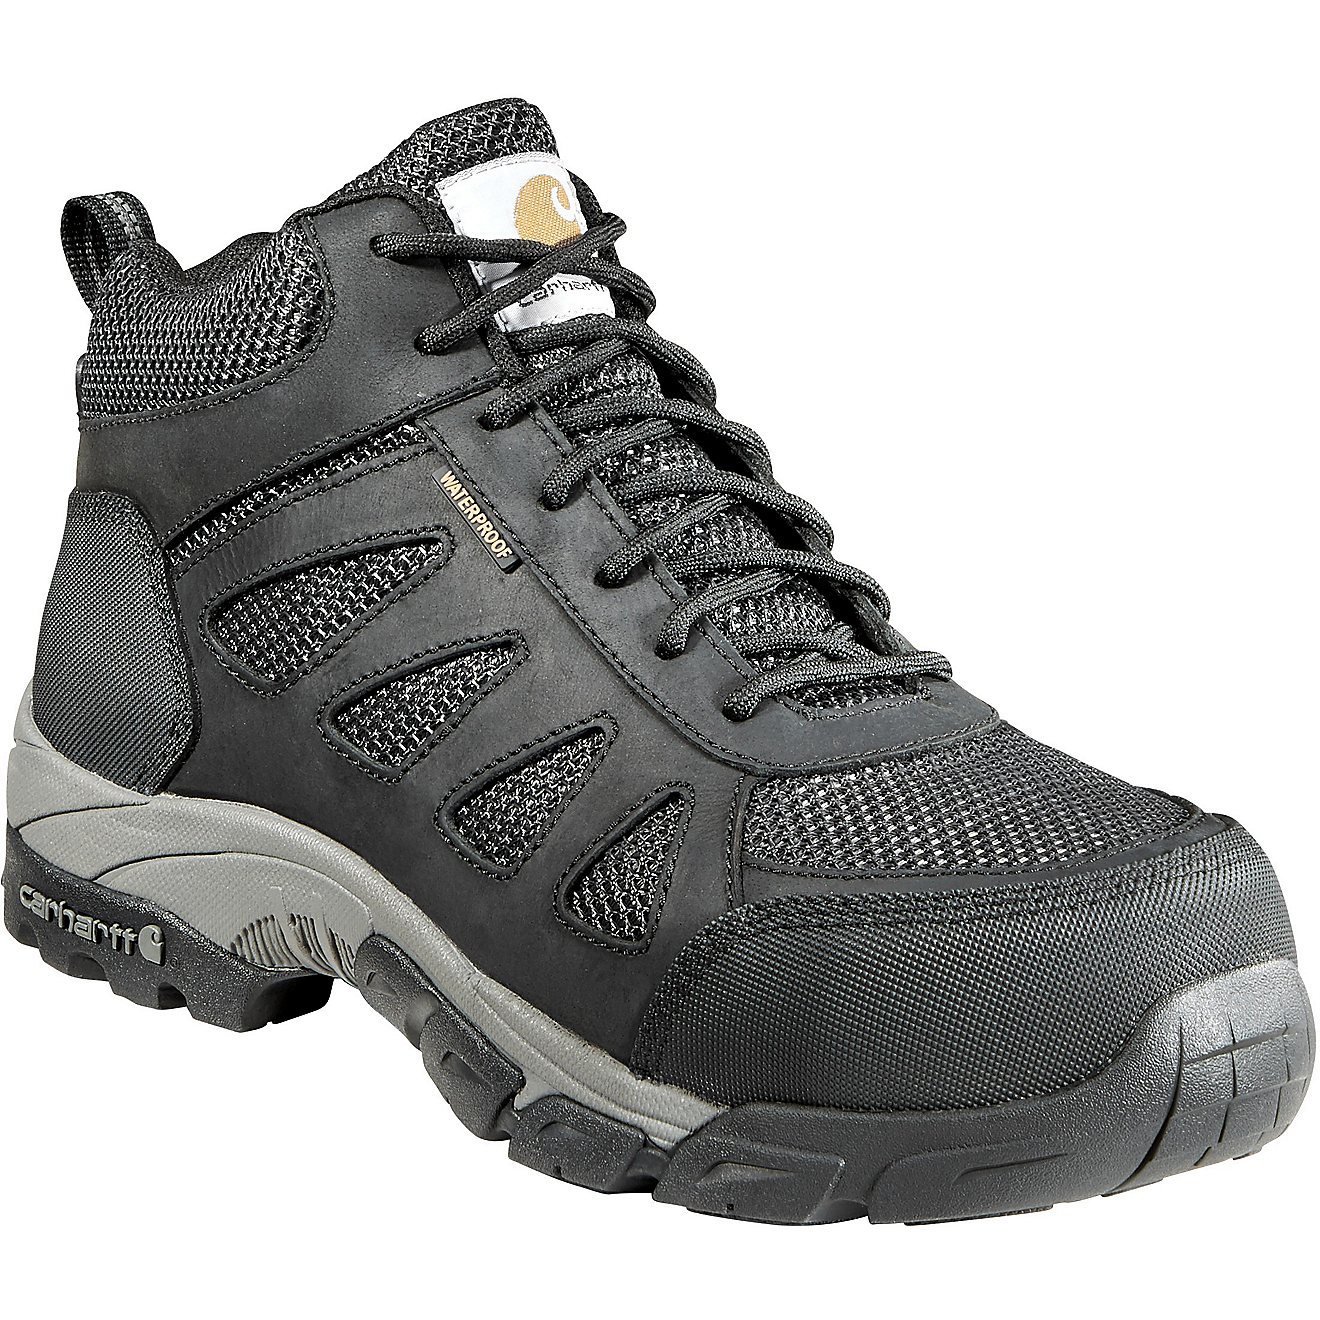 Carhartt Men's Lightweight Safety Toe Hiker Work Boots                                                                           - view number 2